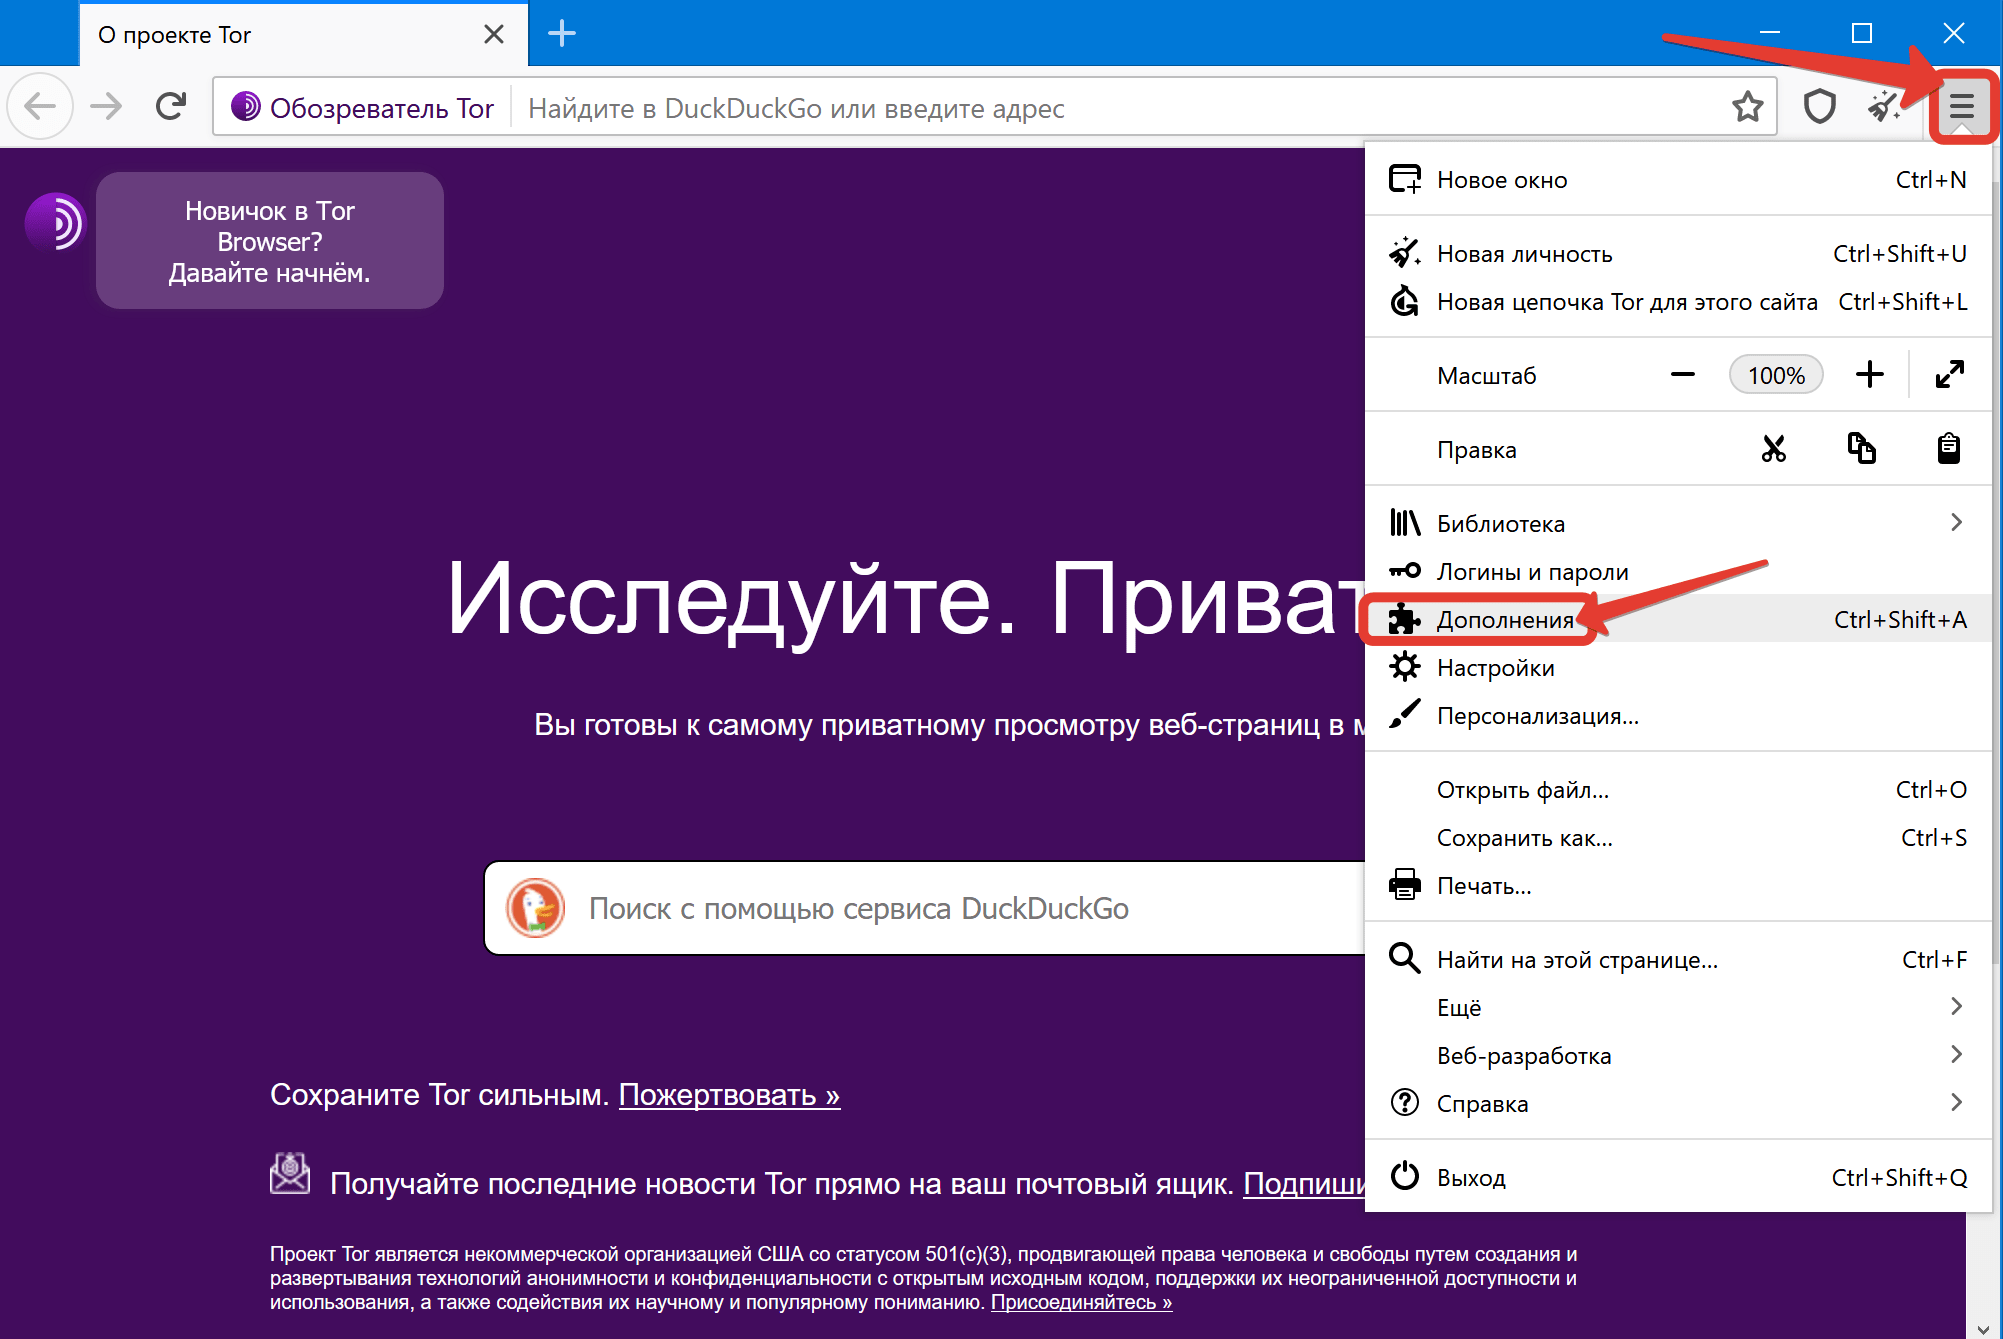 Найти в тор браузере даркнет тор браузер для мас скачать бесплатно на русском даркнет